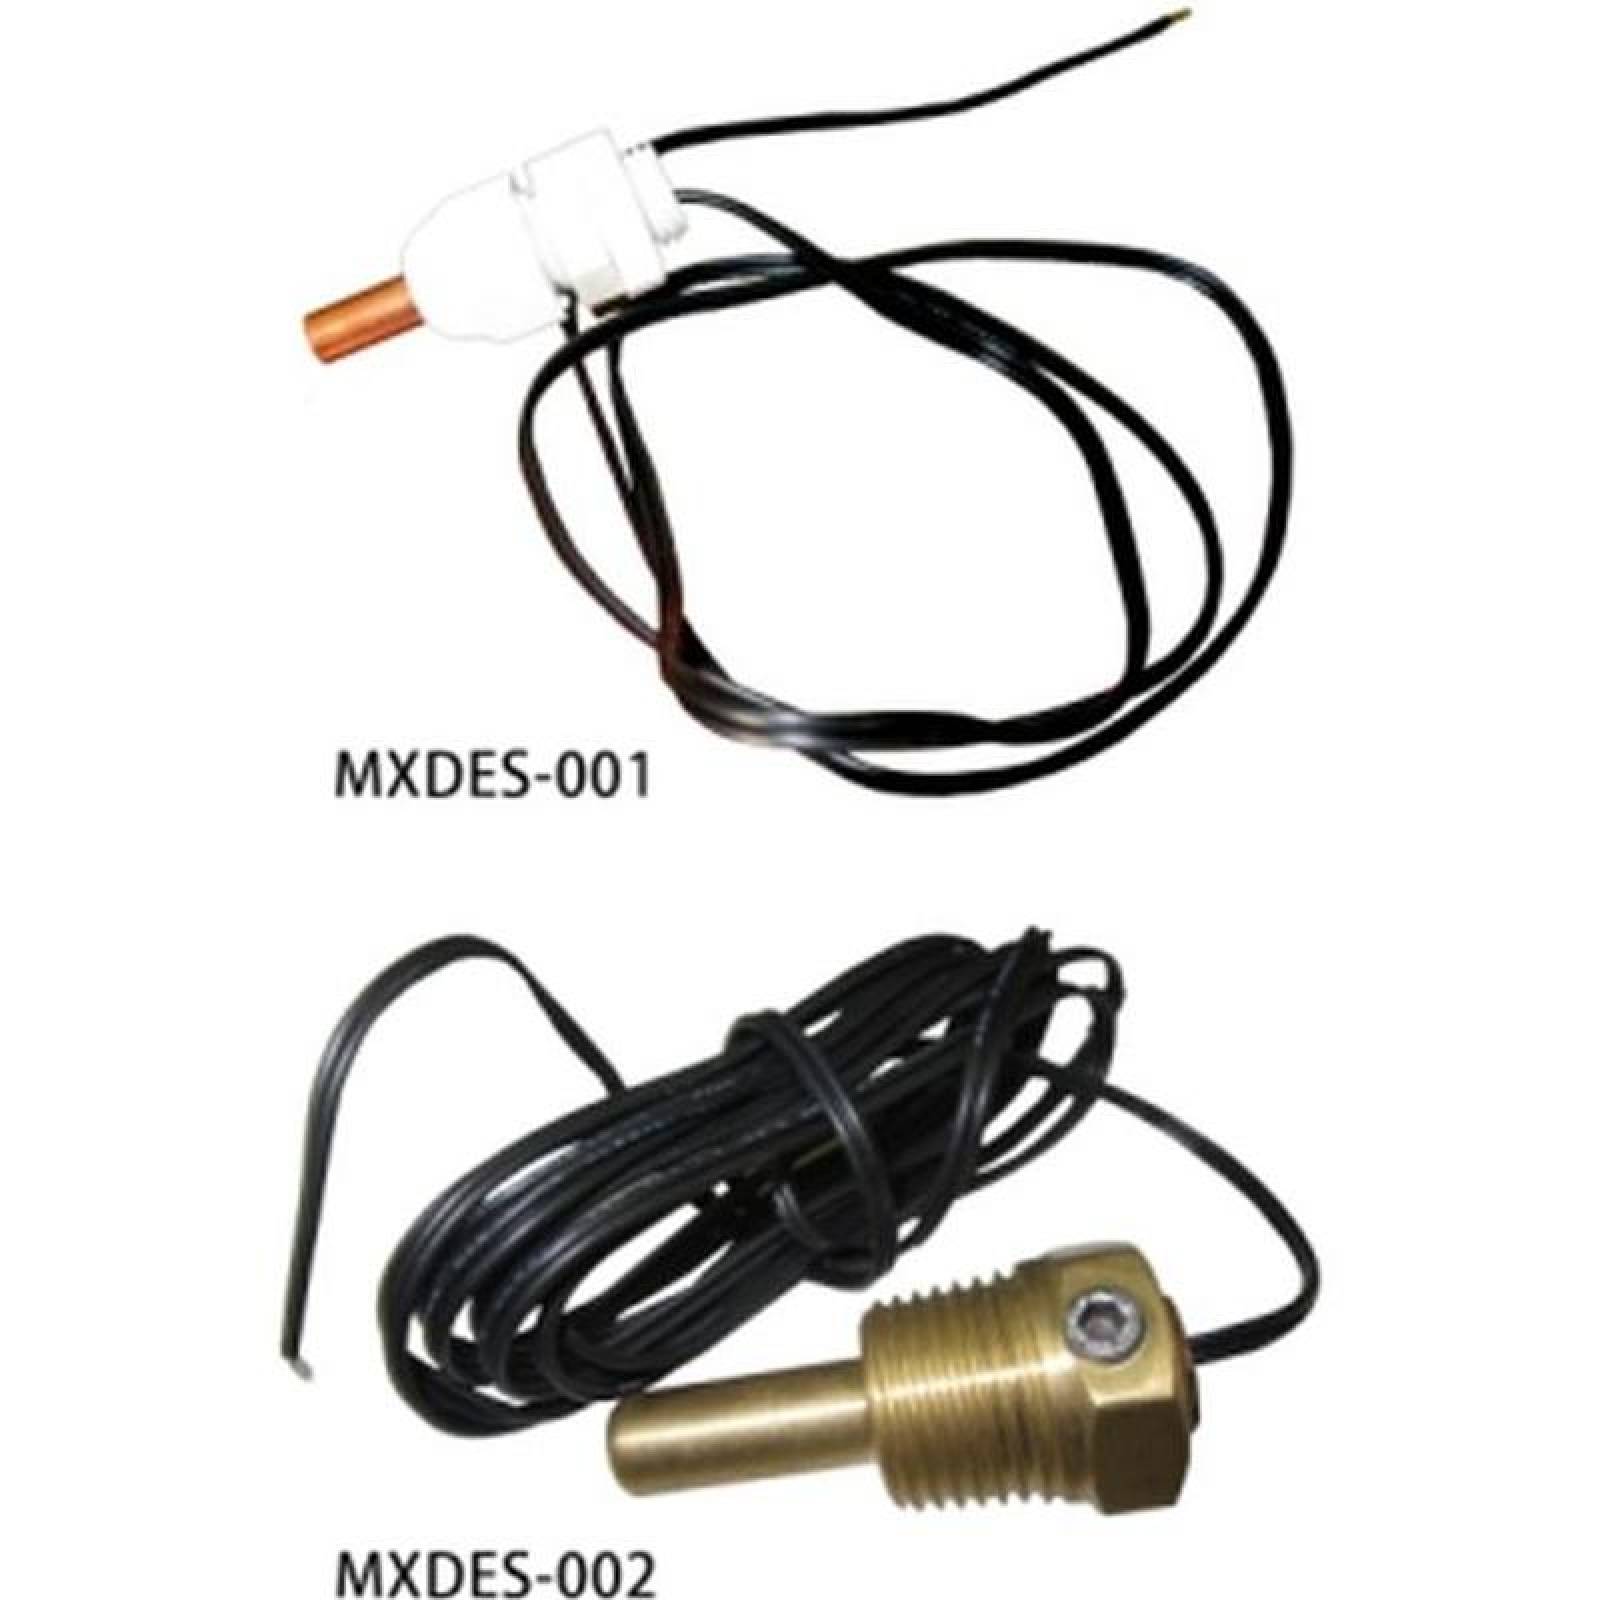 Dispositivo de Medición MXSES-001-4 Sensor Temp, Descarga -40 a 110C 50Kohm25C atornillado a la tub, SensDesc